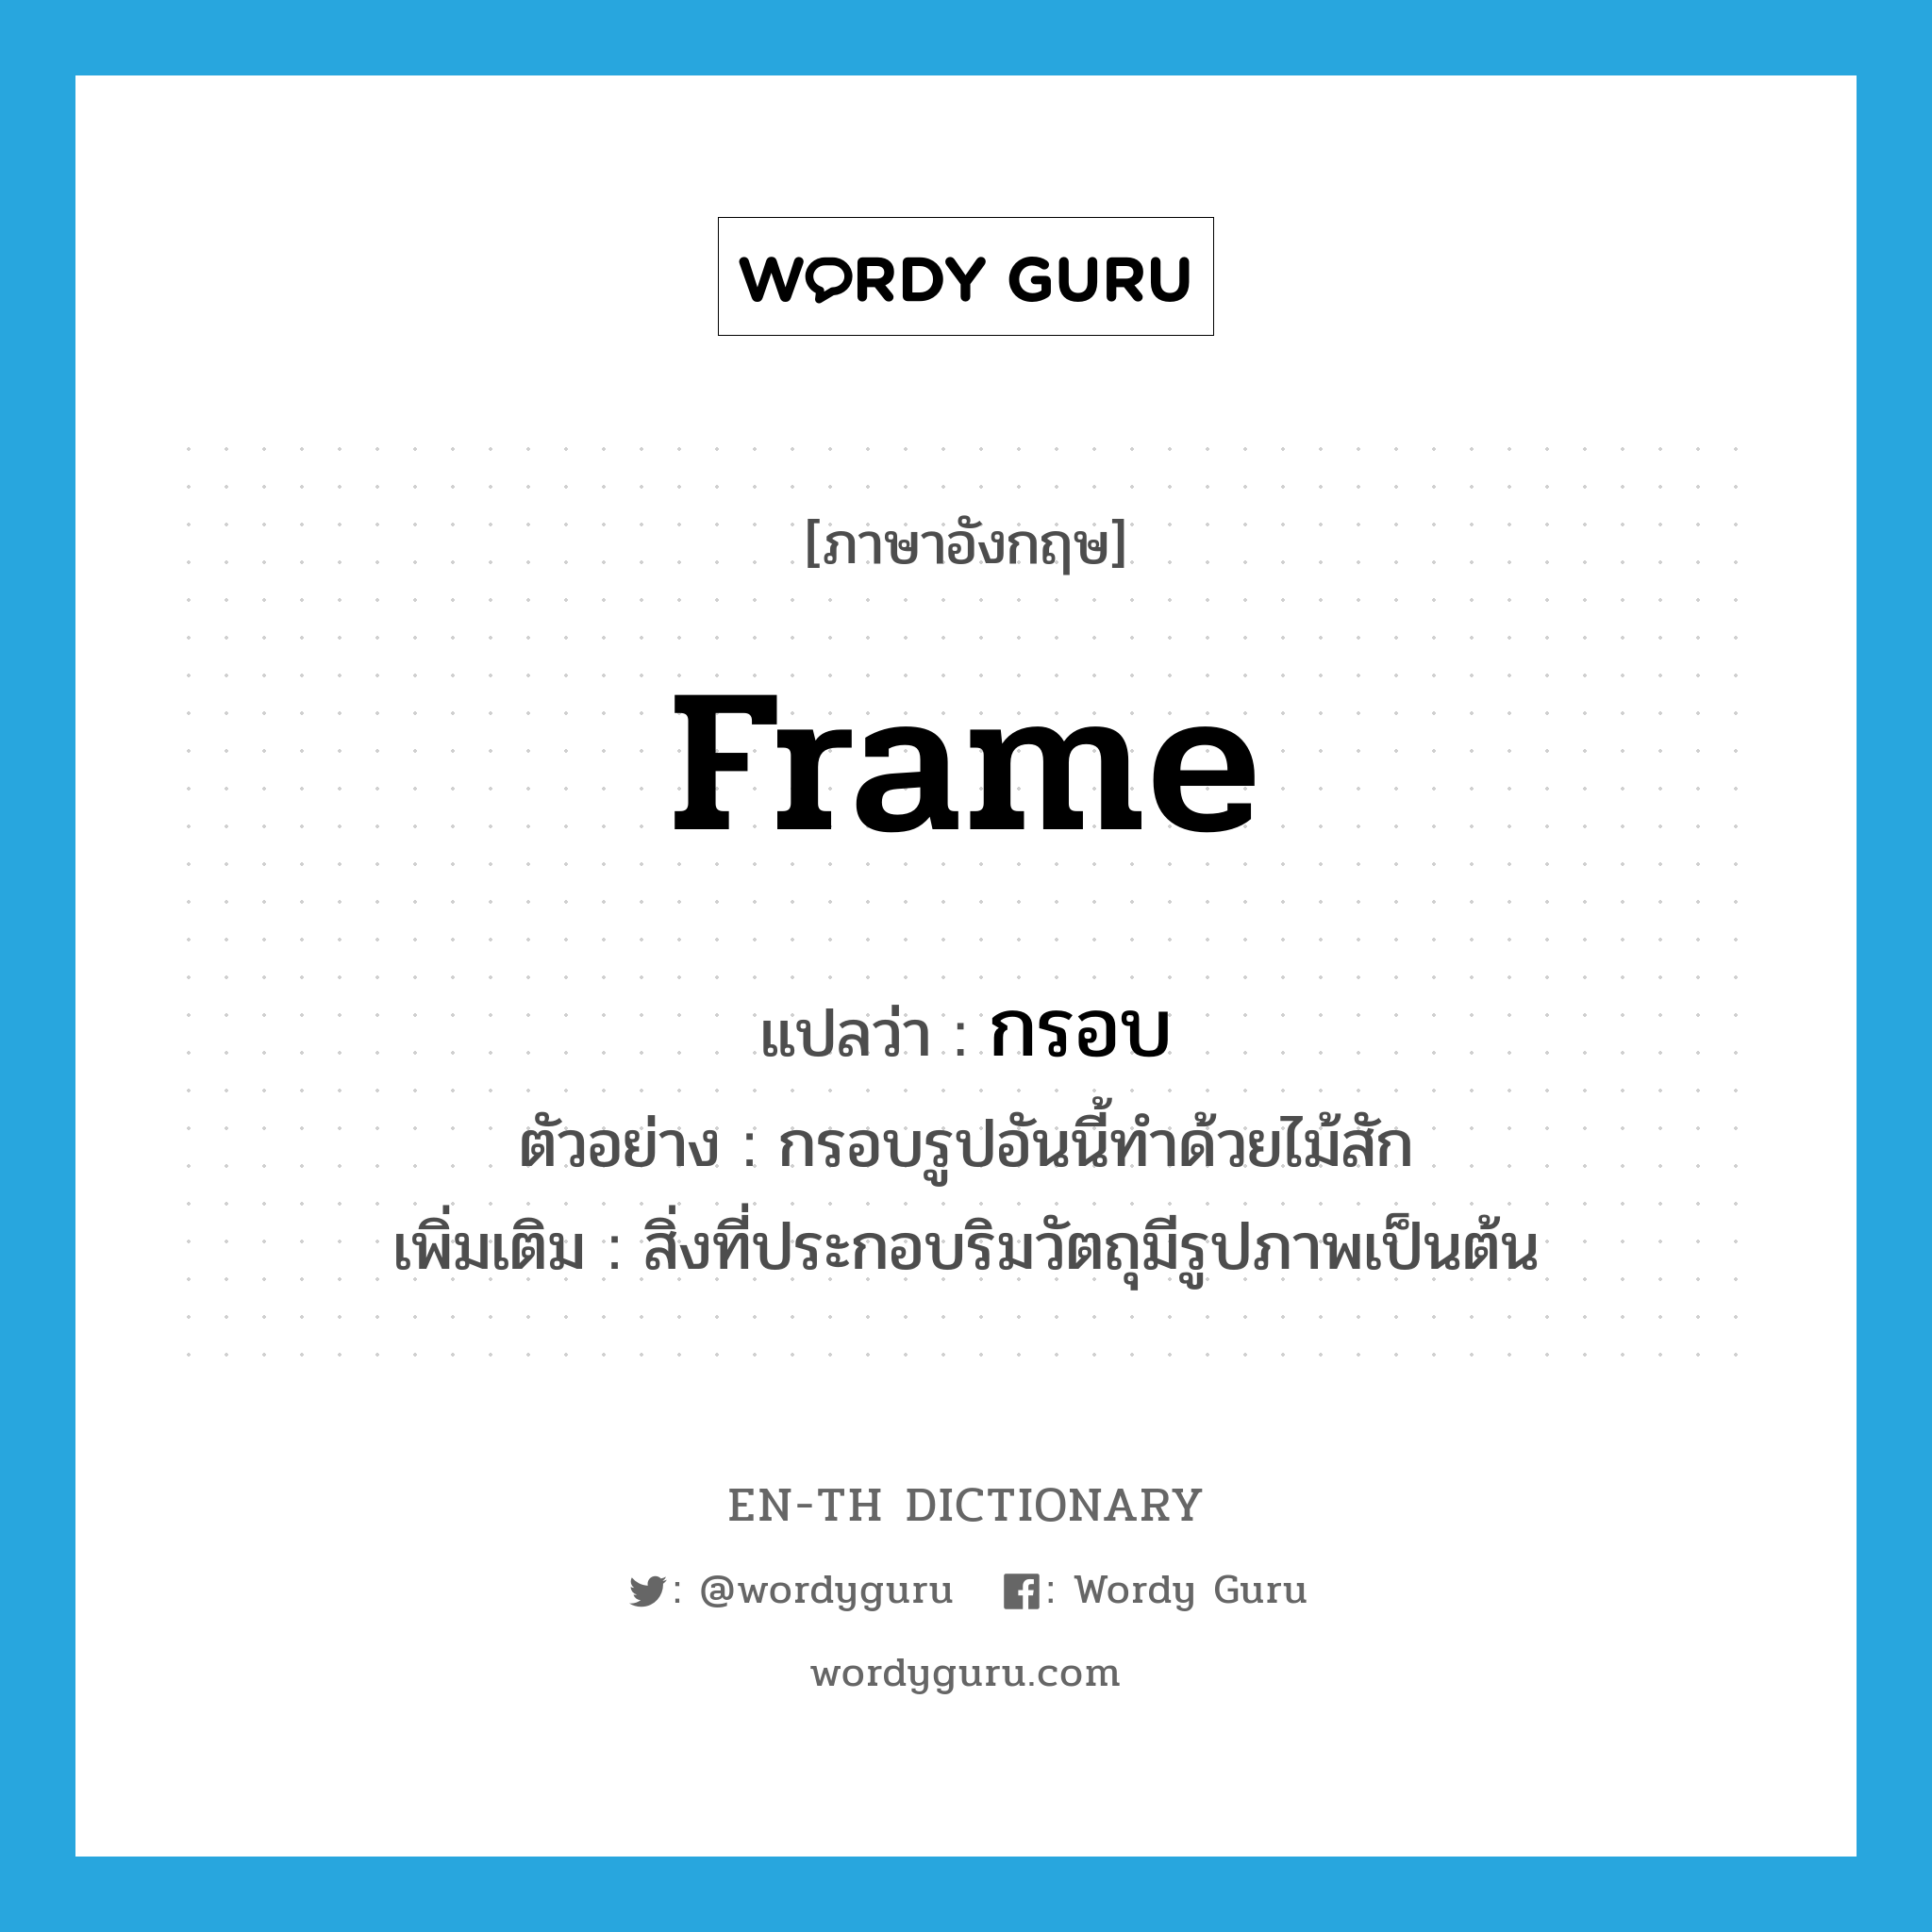 frame แปลว่า?, คำศัพท์ภาษาอังกฤษ frame แปลว่า กรอบ ประเภท N ตัวอย่าง กรอบรูปอันนี้ทำด้วยไม้สัก เพิ่มเติม สิ่งที่ประกอบริมวัตถุมีรูปภาพเป็นต้น หมวด N